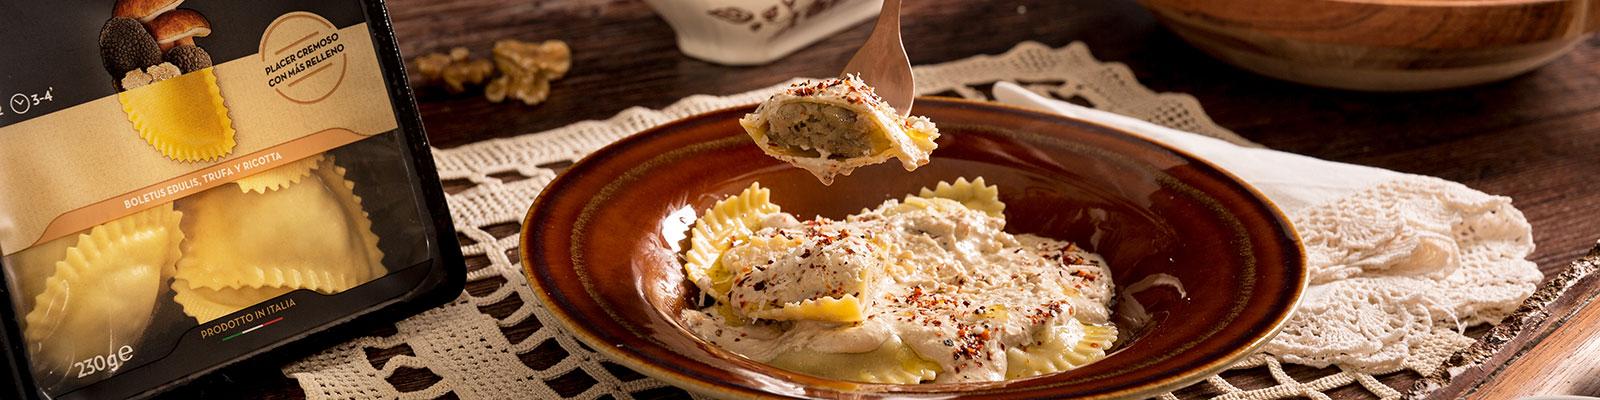 Pasta Garofalo - Mezzelune de Boletus y Trufa con salsa de nueces